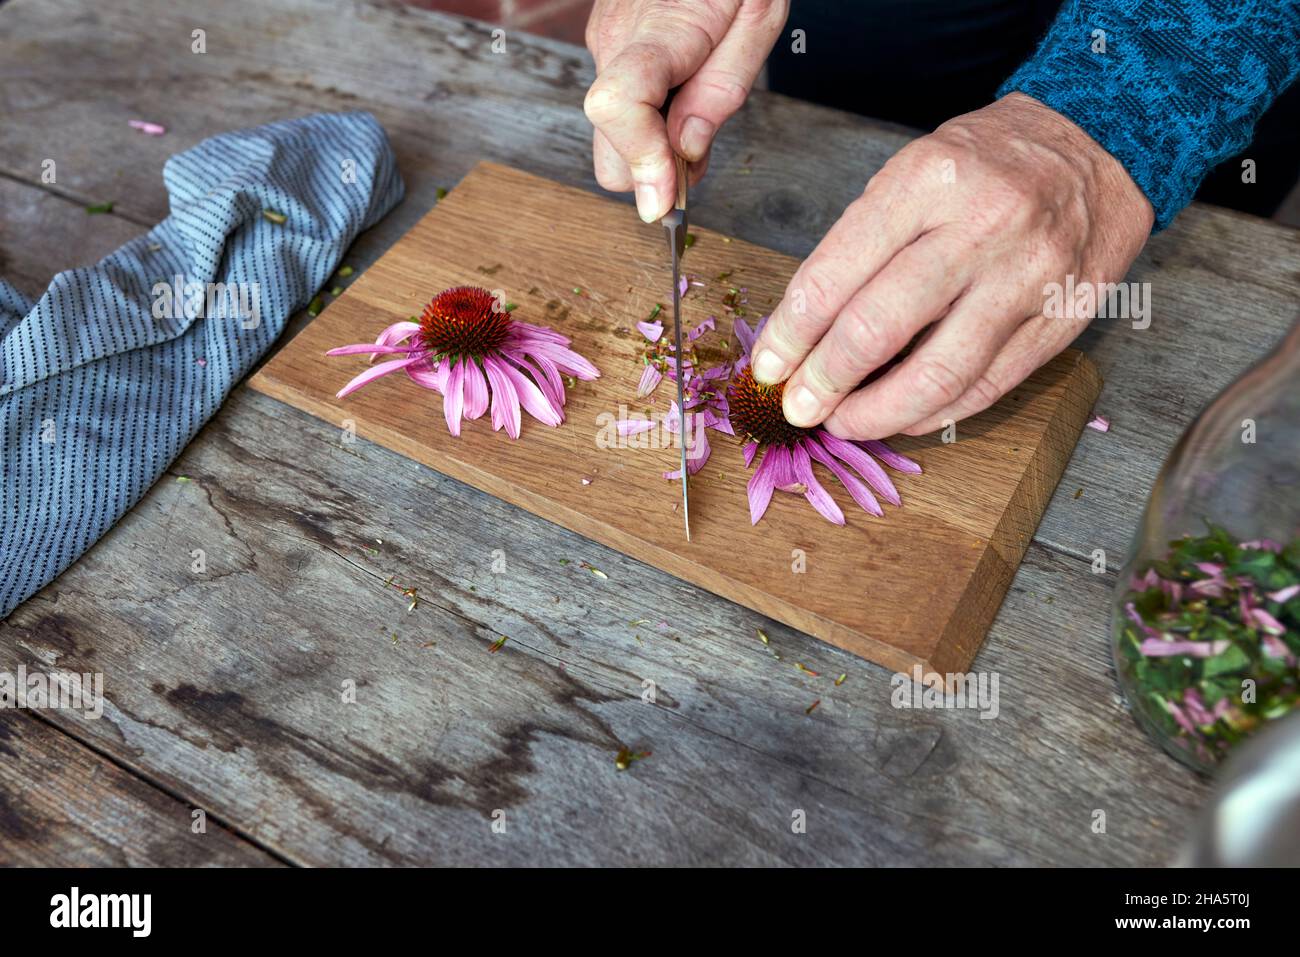 Um eine Echinacea-Tinktur zu machen, werden ganze Pflanzen von einer Frau auf einem Holzbrett in große Stücke geschnitten Stockfoto